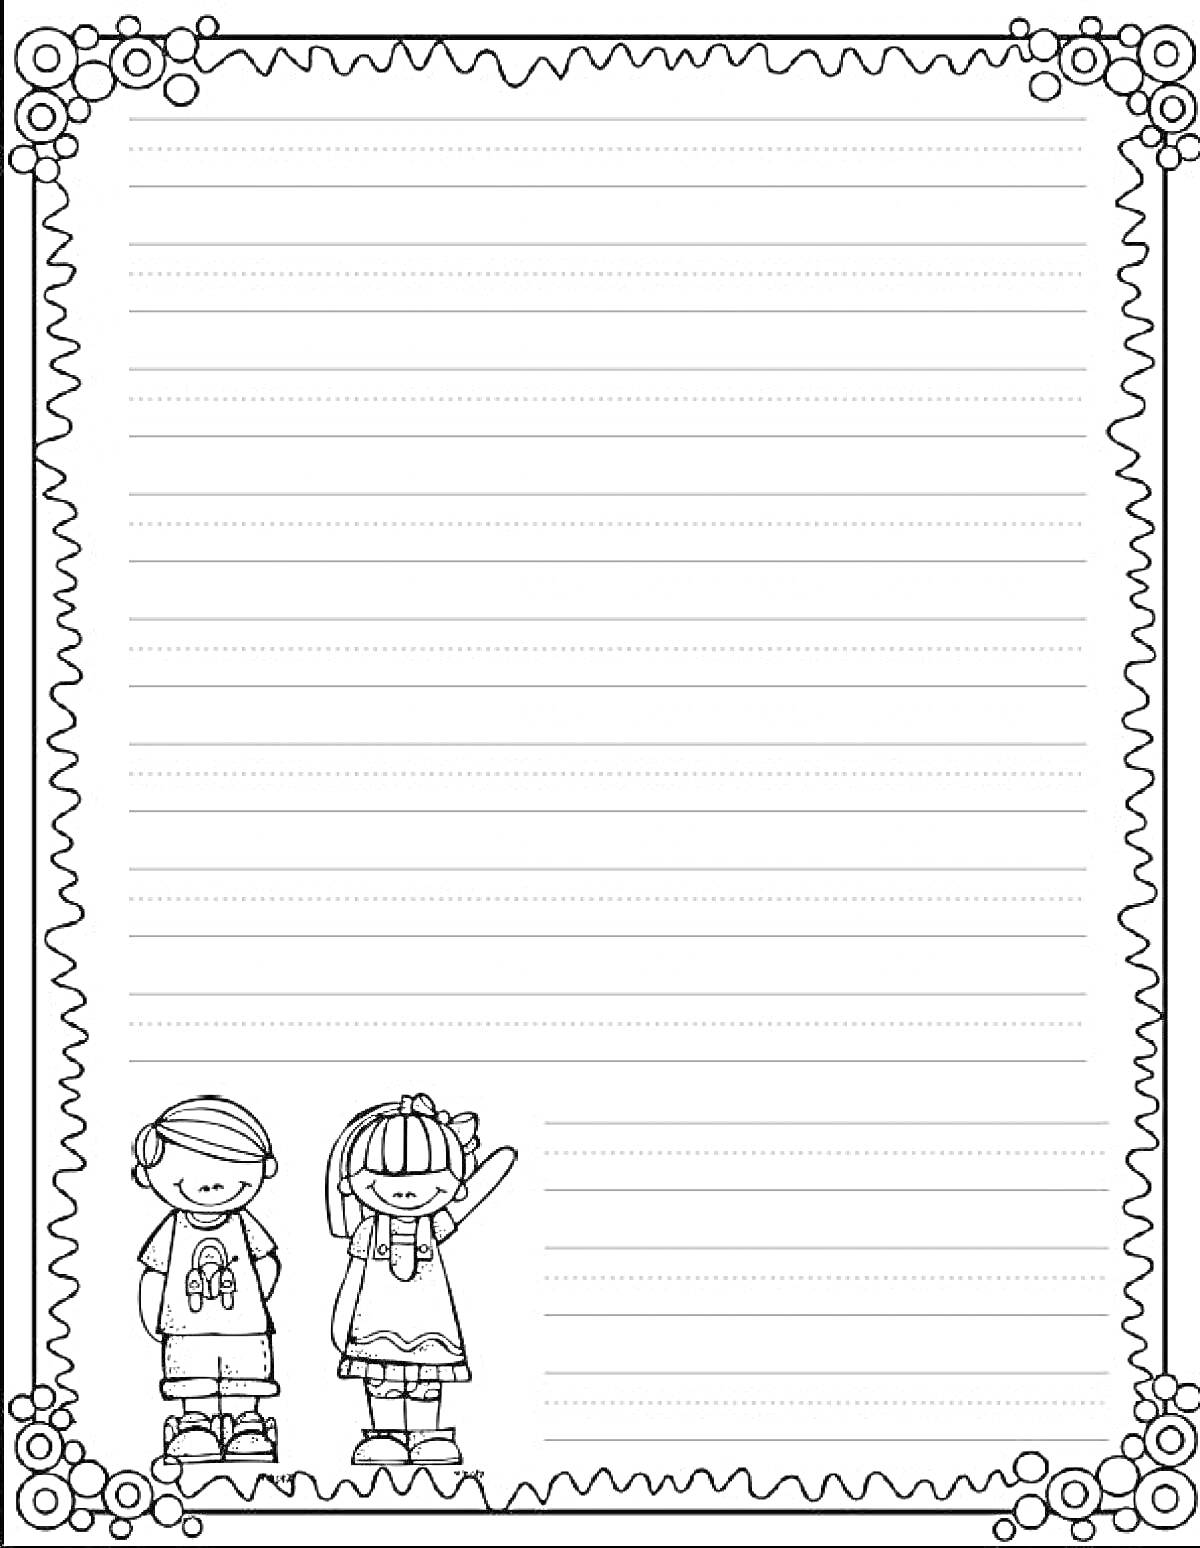 Раскраска Дети внизу, девочка с бантом машет рукой, рамка с завитками, линованная бумага для письма